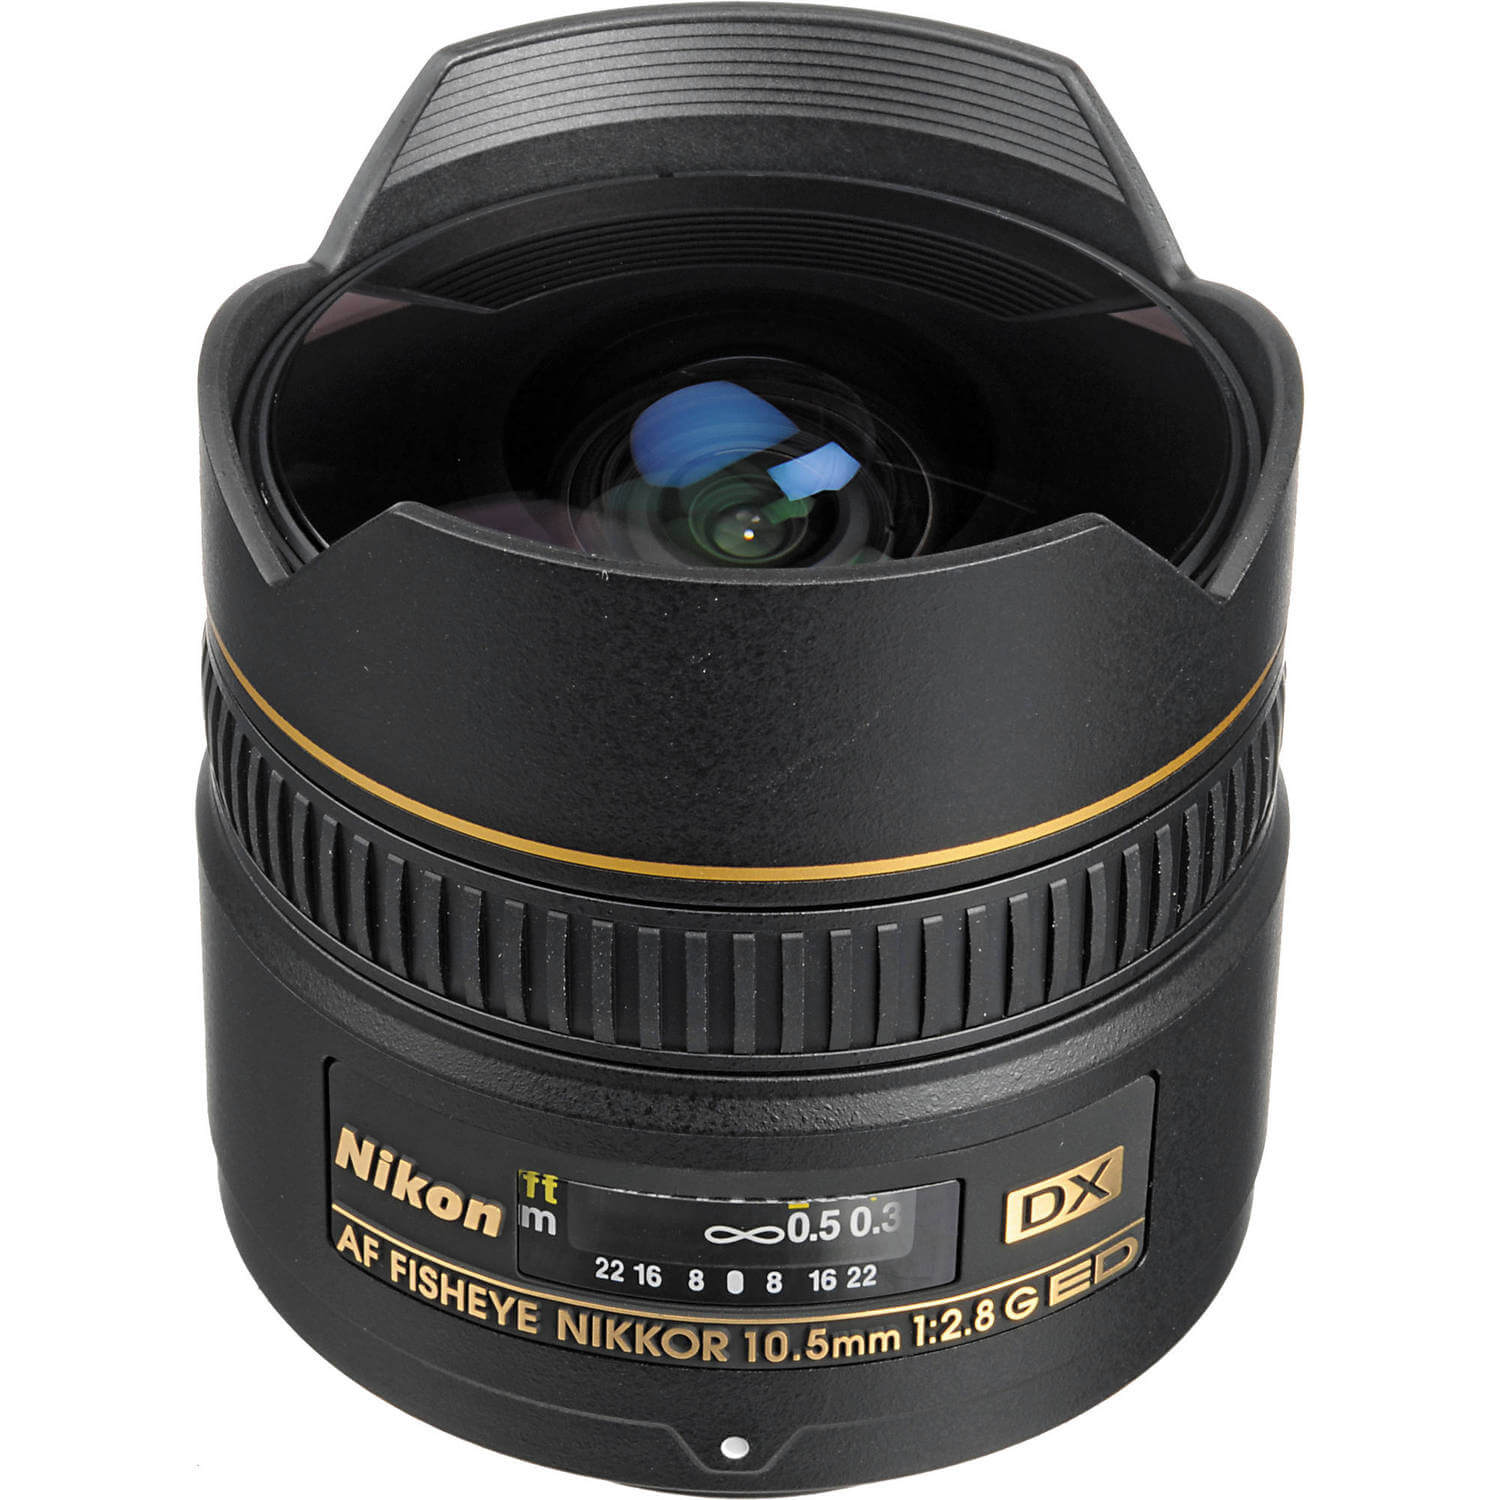 Nikon AF DX Fisheye-NIKKOR 10.5mm f/2.8G ED Lens ราคา | ZoomCamera